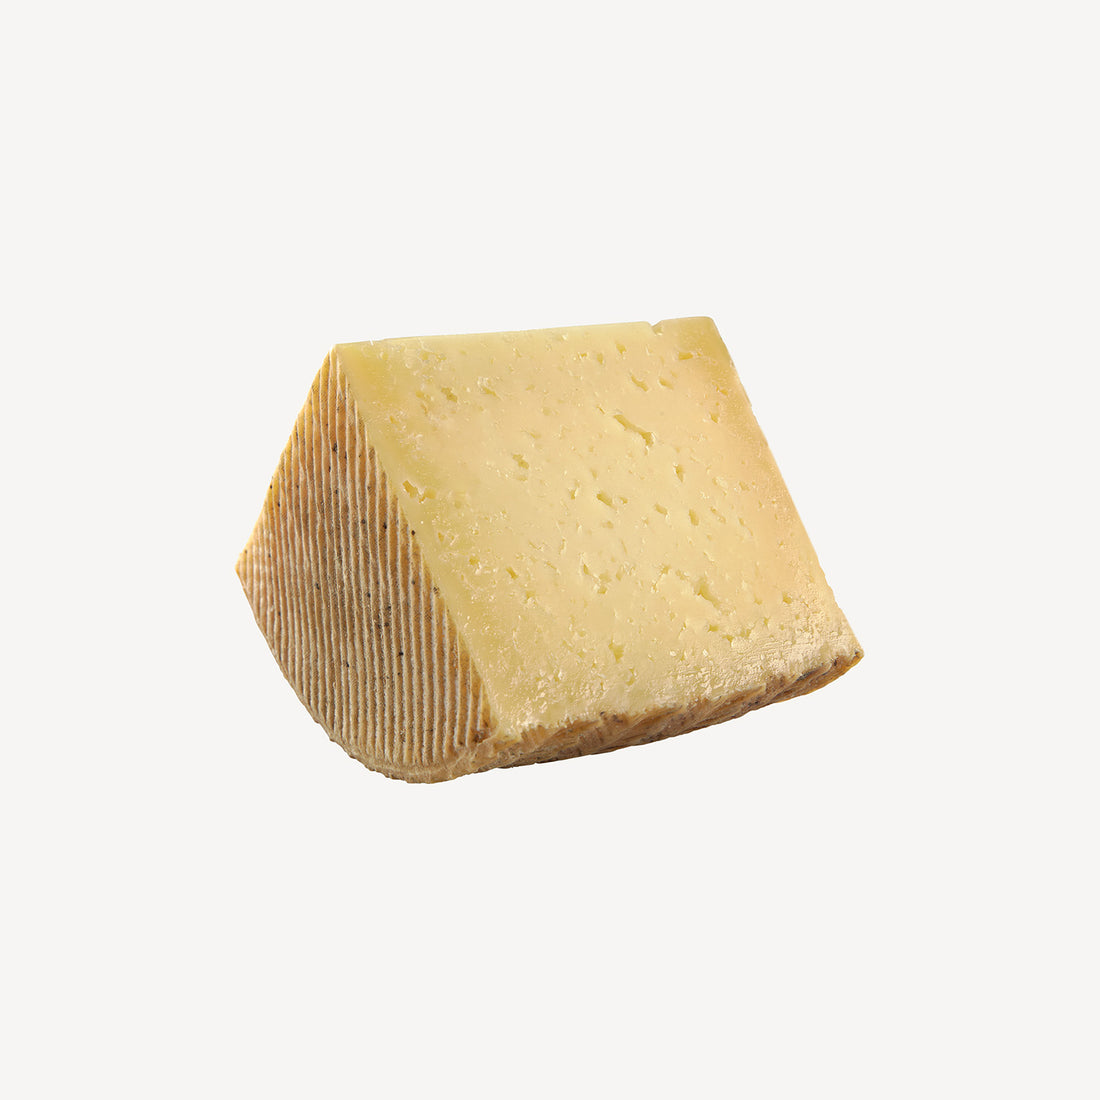 Cuarto de queso manchego puro de oveja